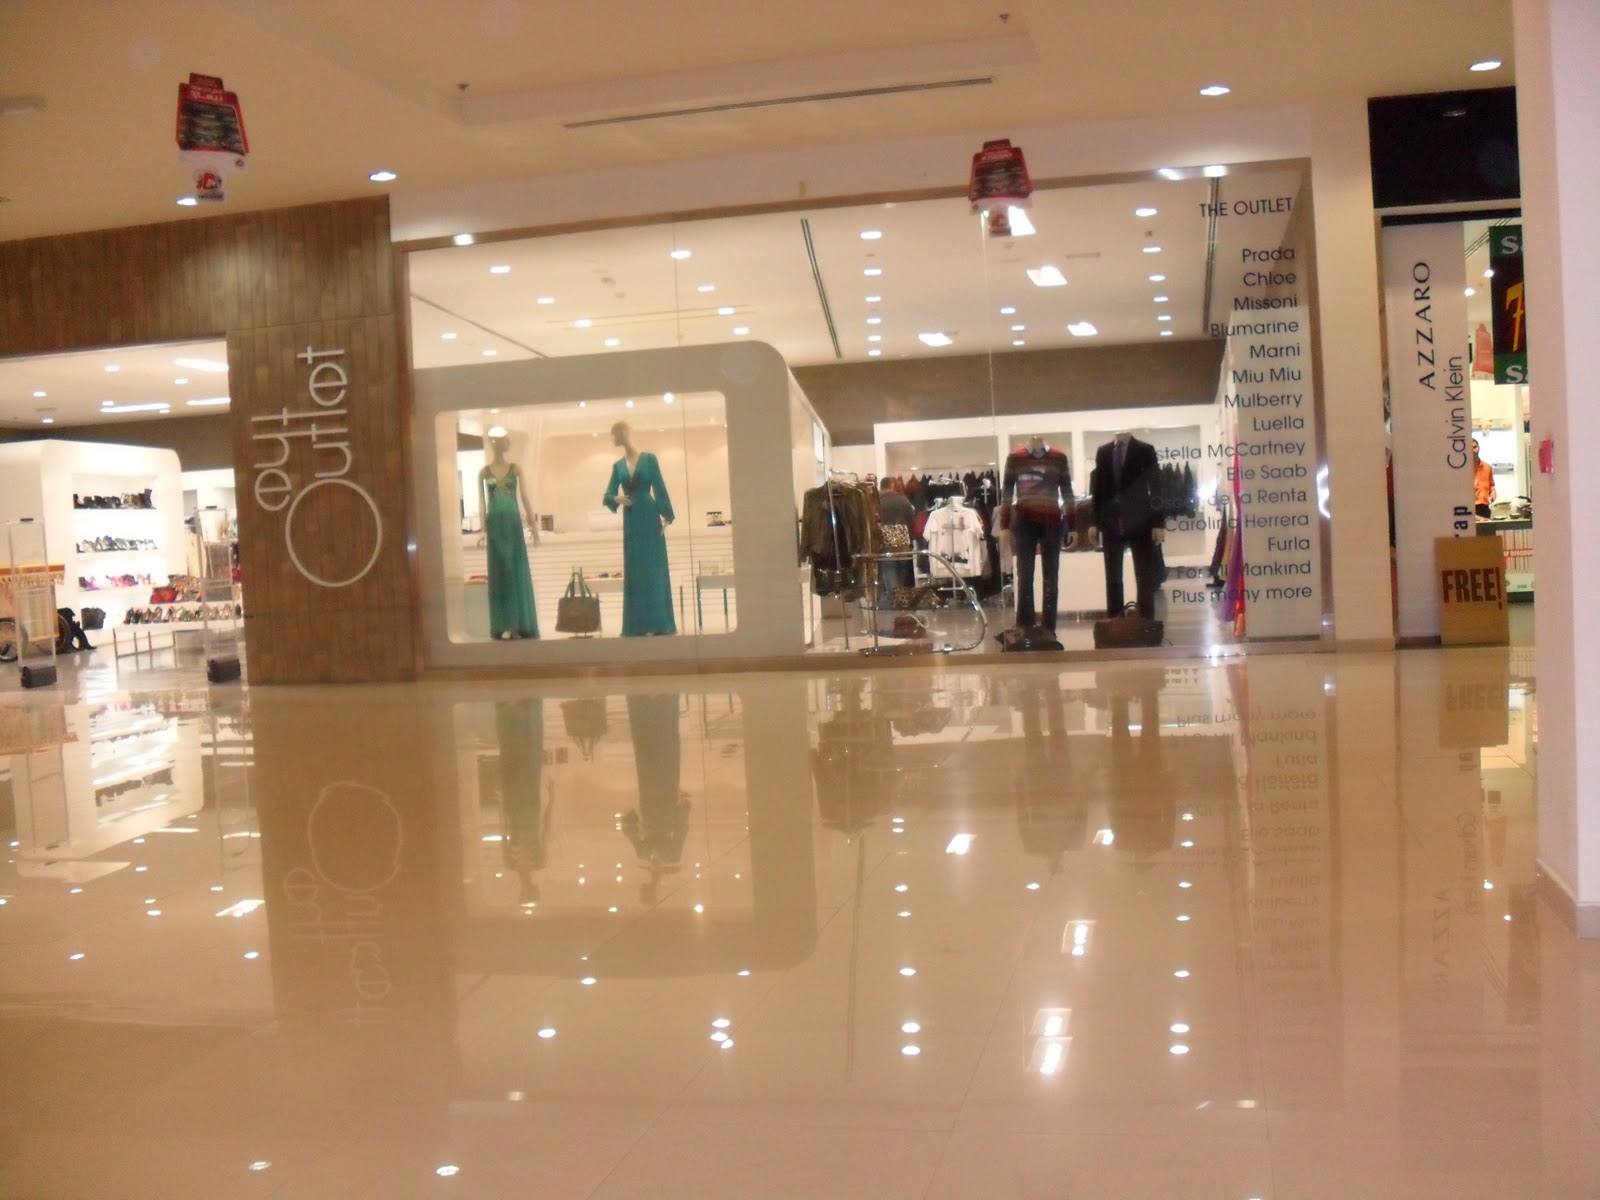 CALVIN KLEIN OUTLET - Dubai Outlet Mall